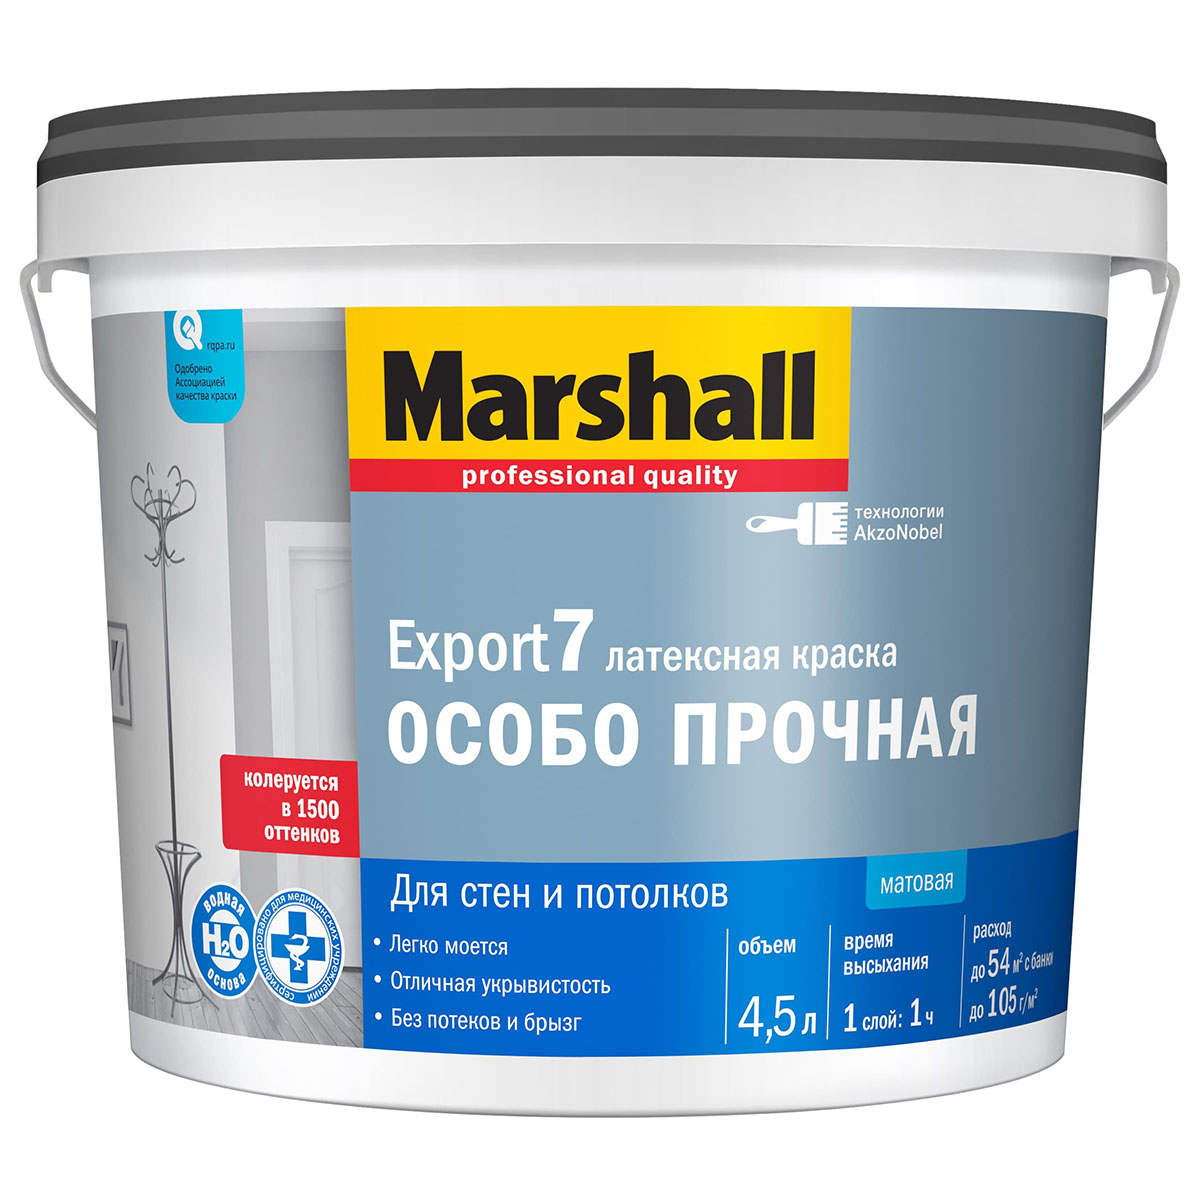 Marshall Export 7 / Маршал Экспорт 7 Особо прочная матовая краска - купить  в интернет-магазине по выгодной цене.